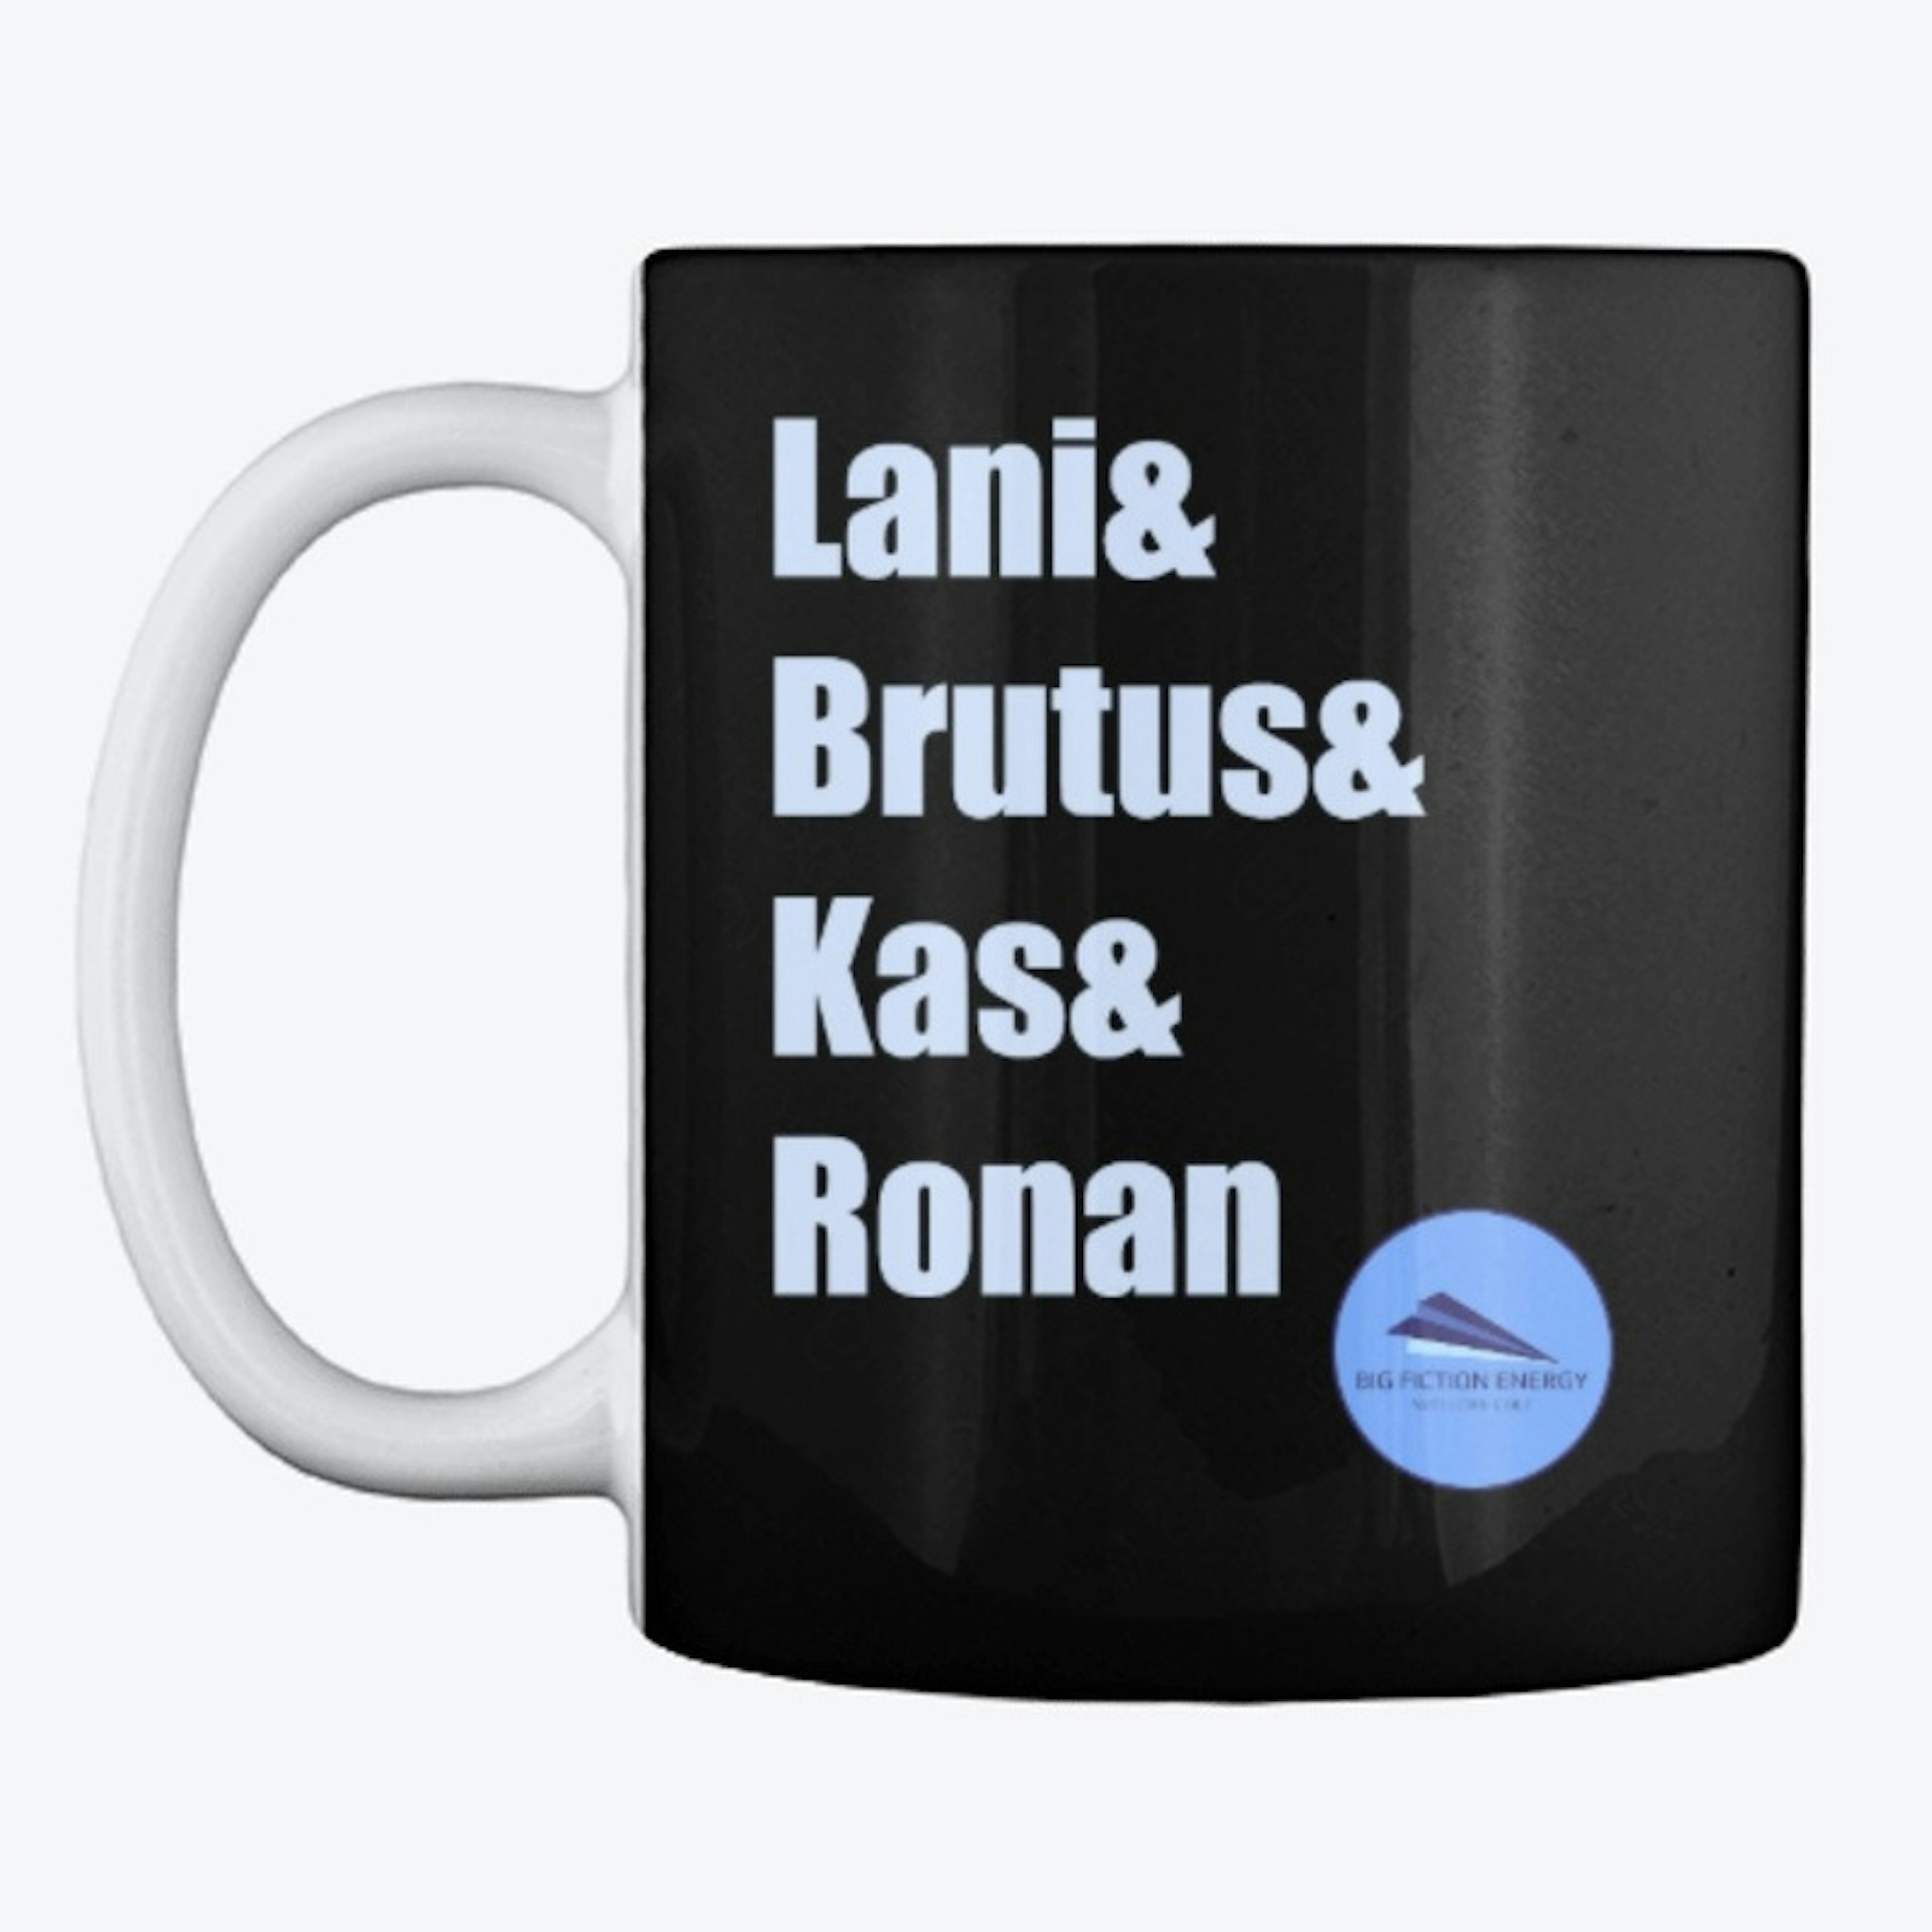 Lani& Brutus& Kas& Ronan